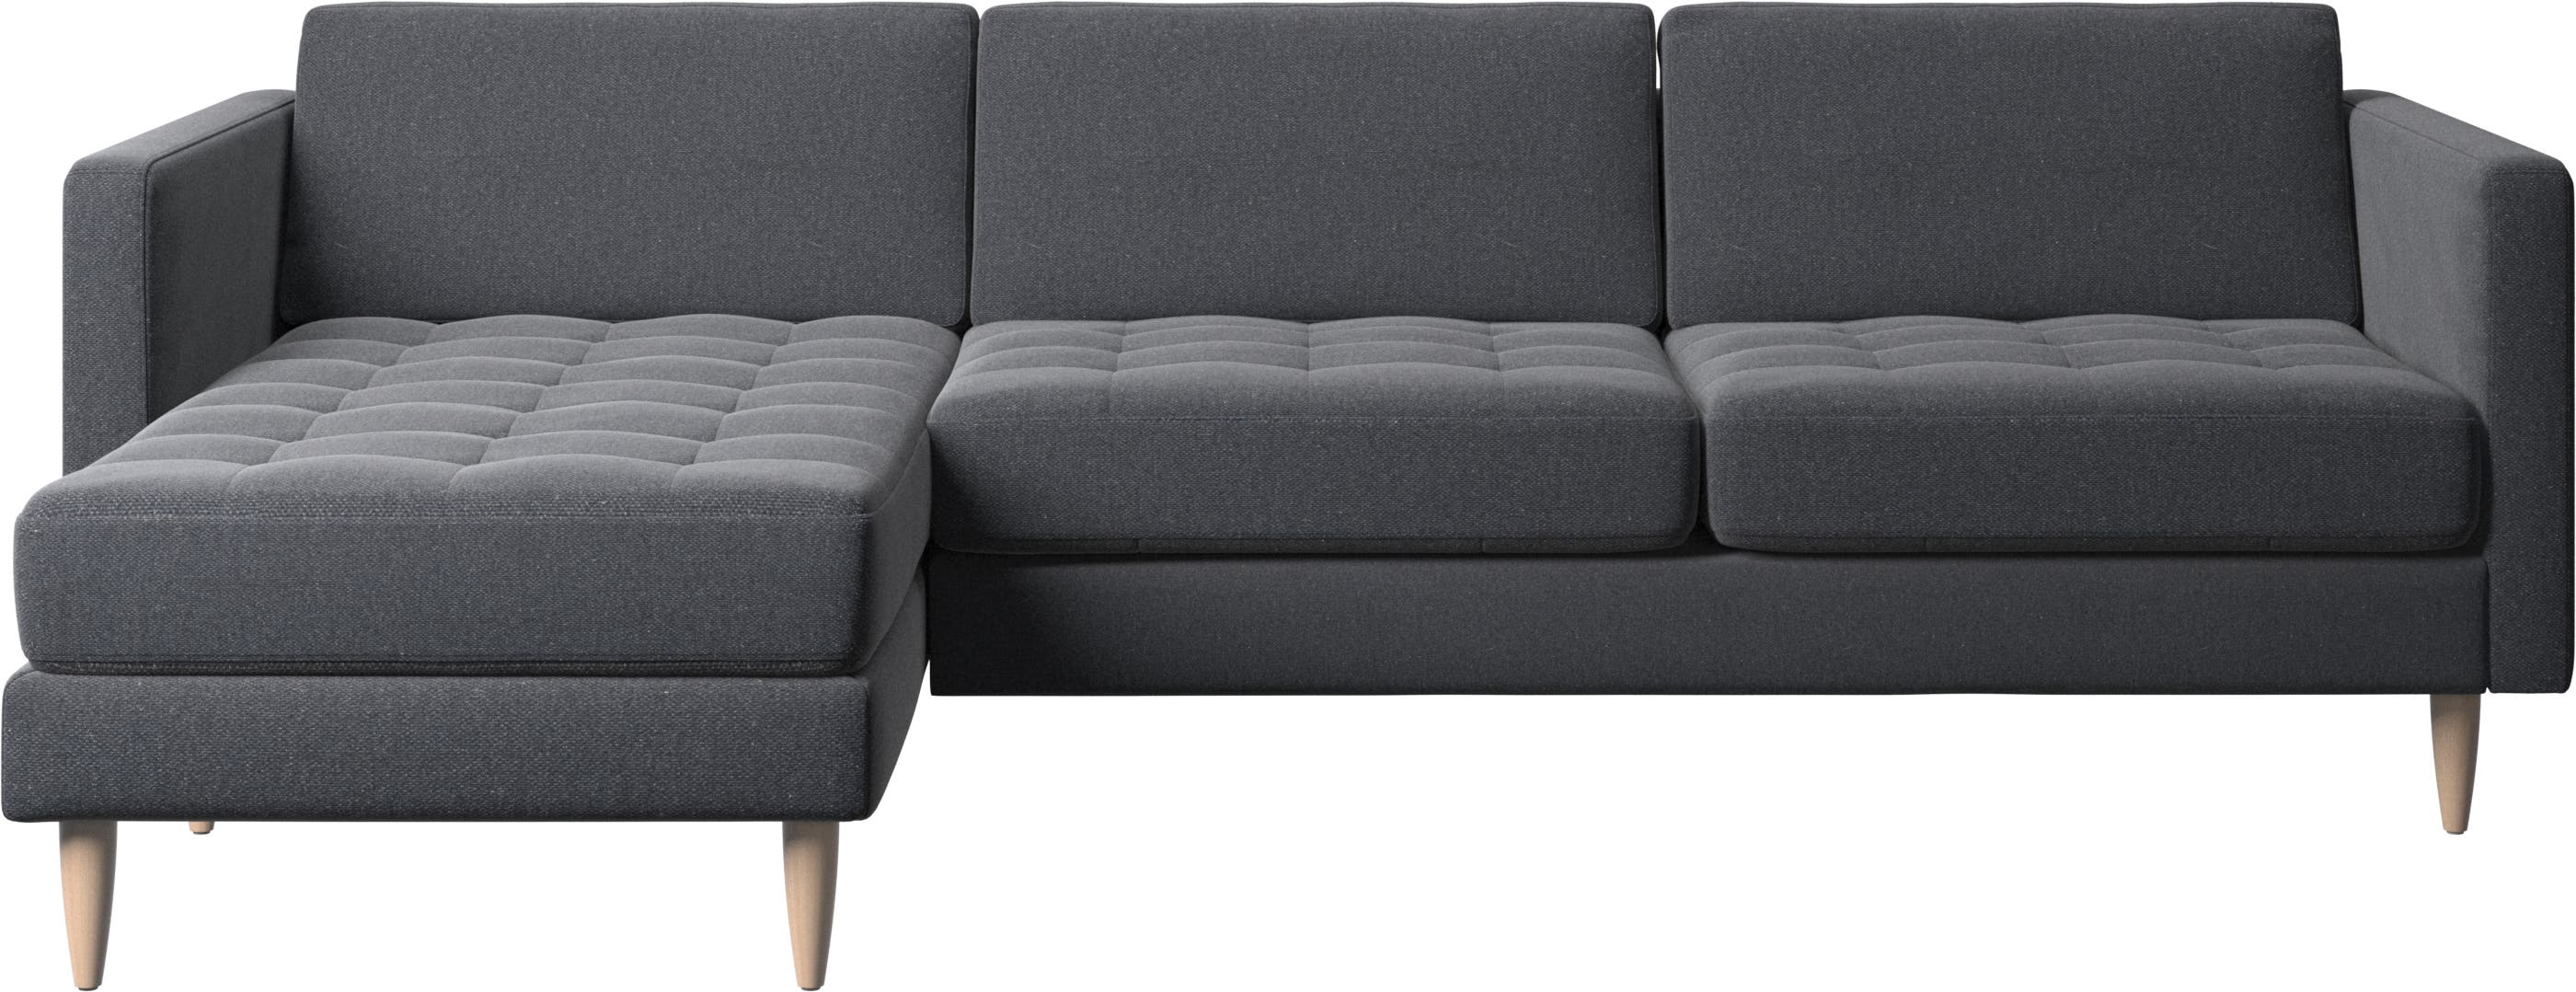 Osaka sofa with resting unit, tufted seat